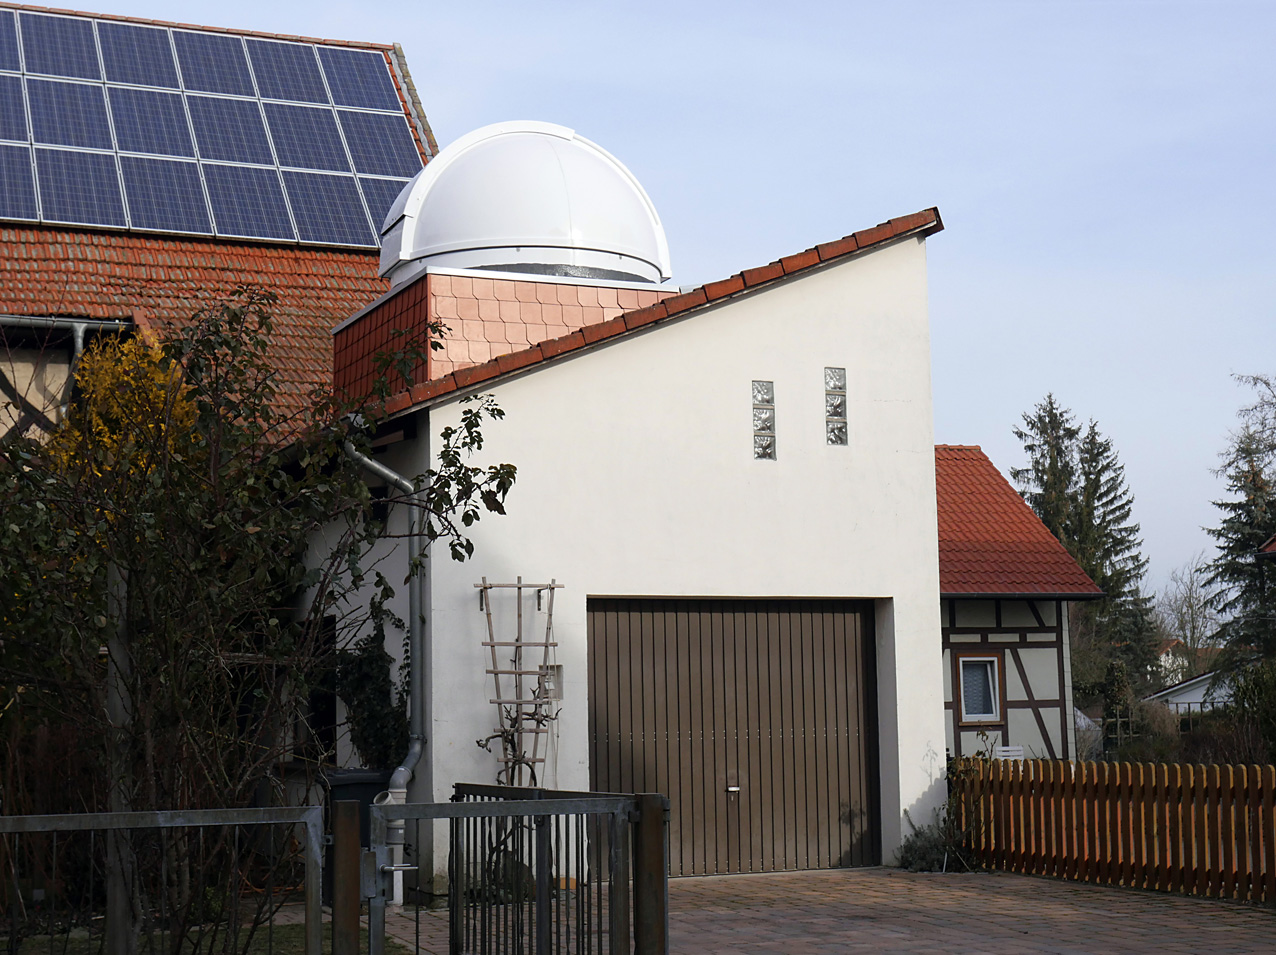 PULSAR DOMES 2.2m Observatorio - Construcción baja